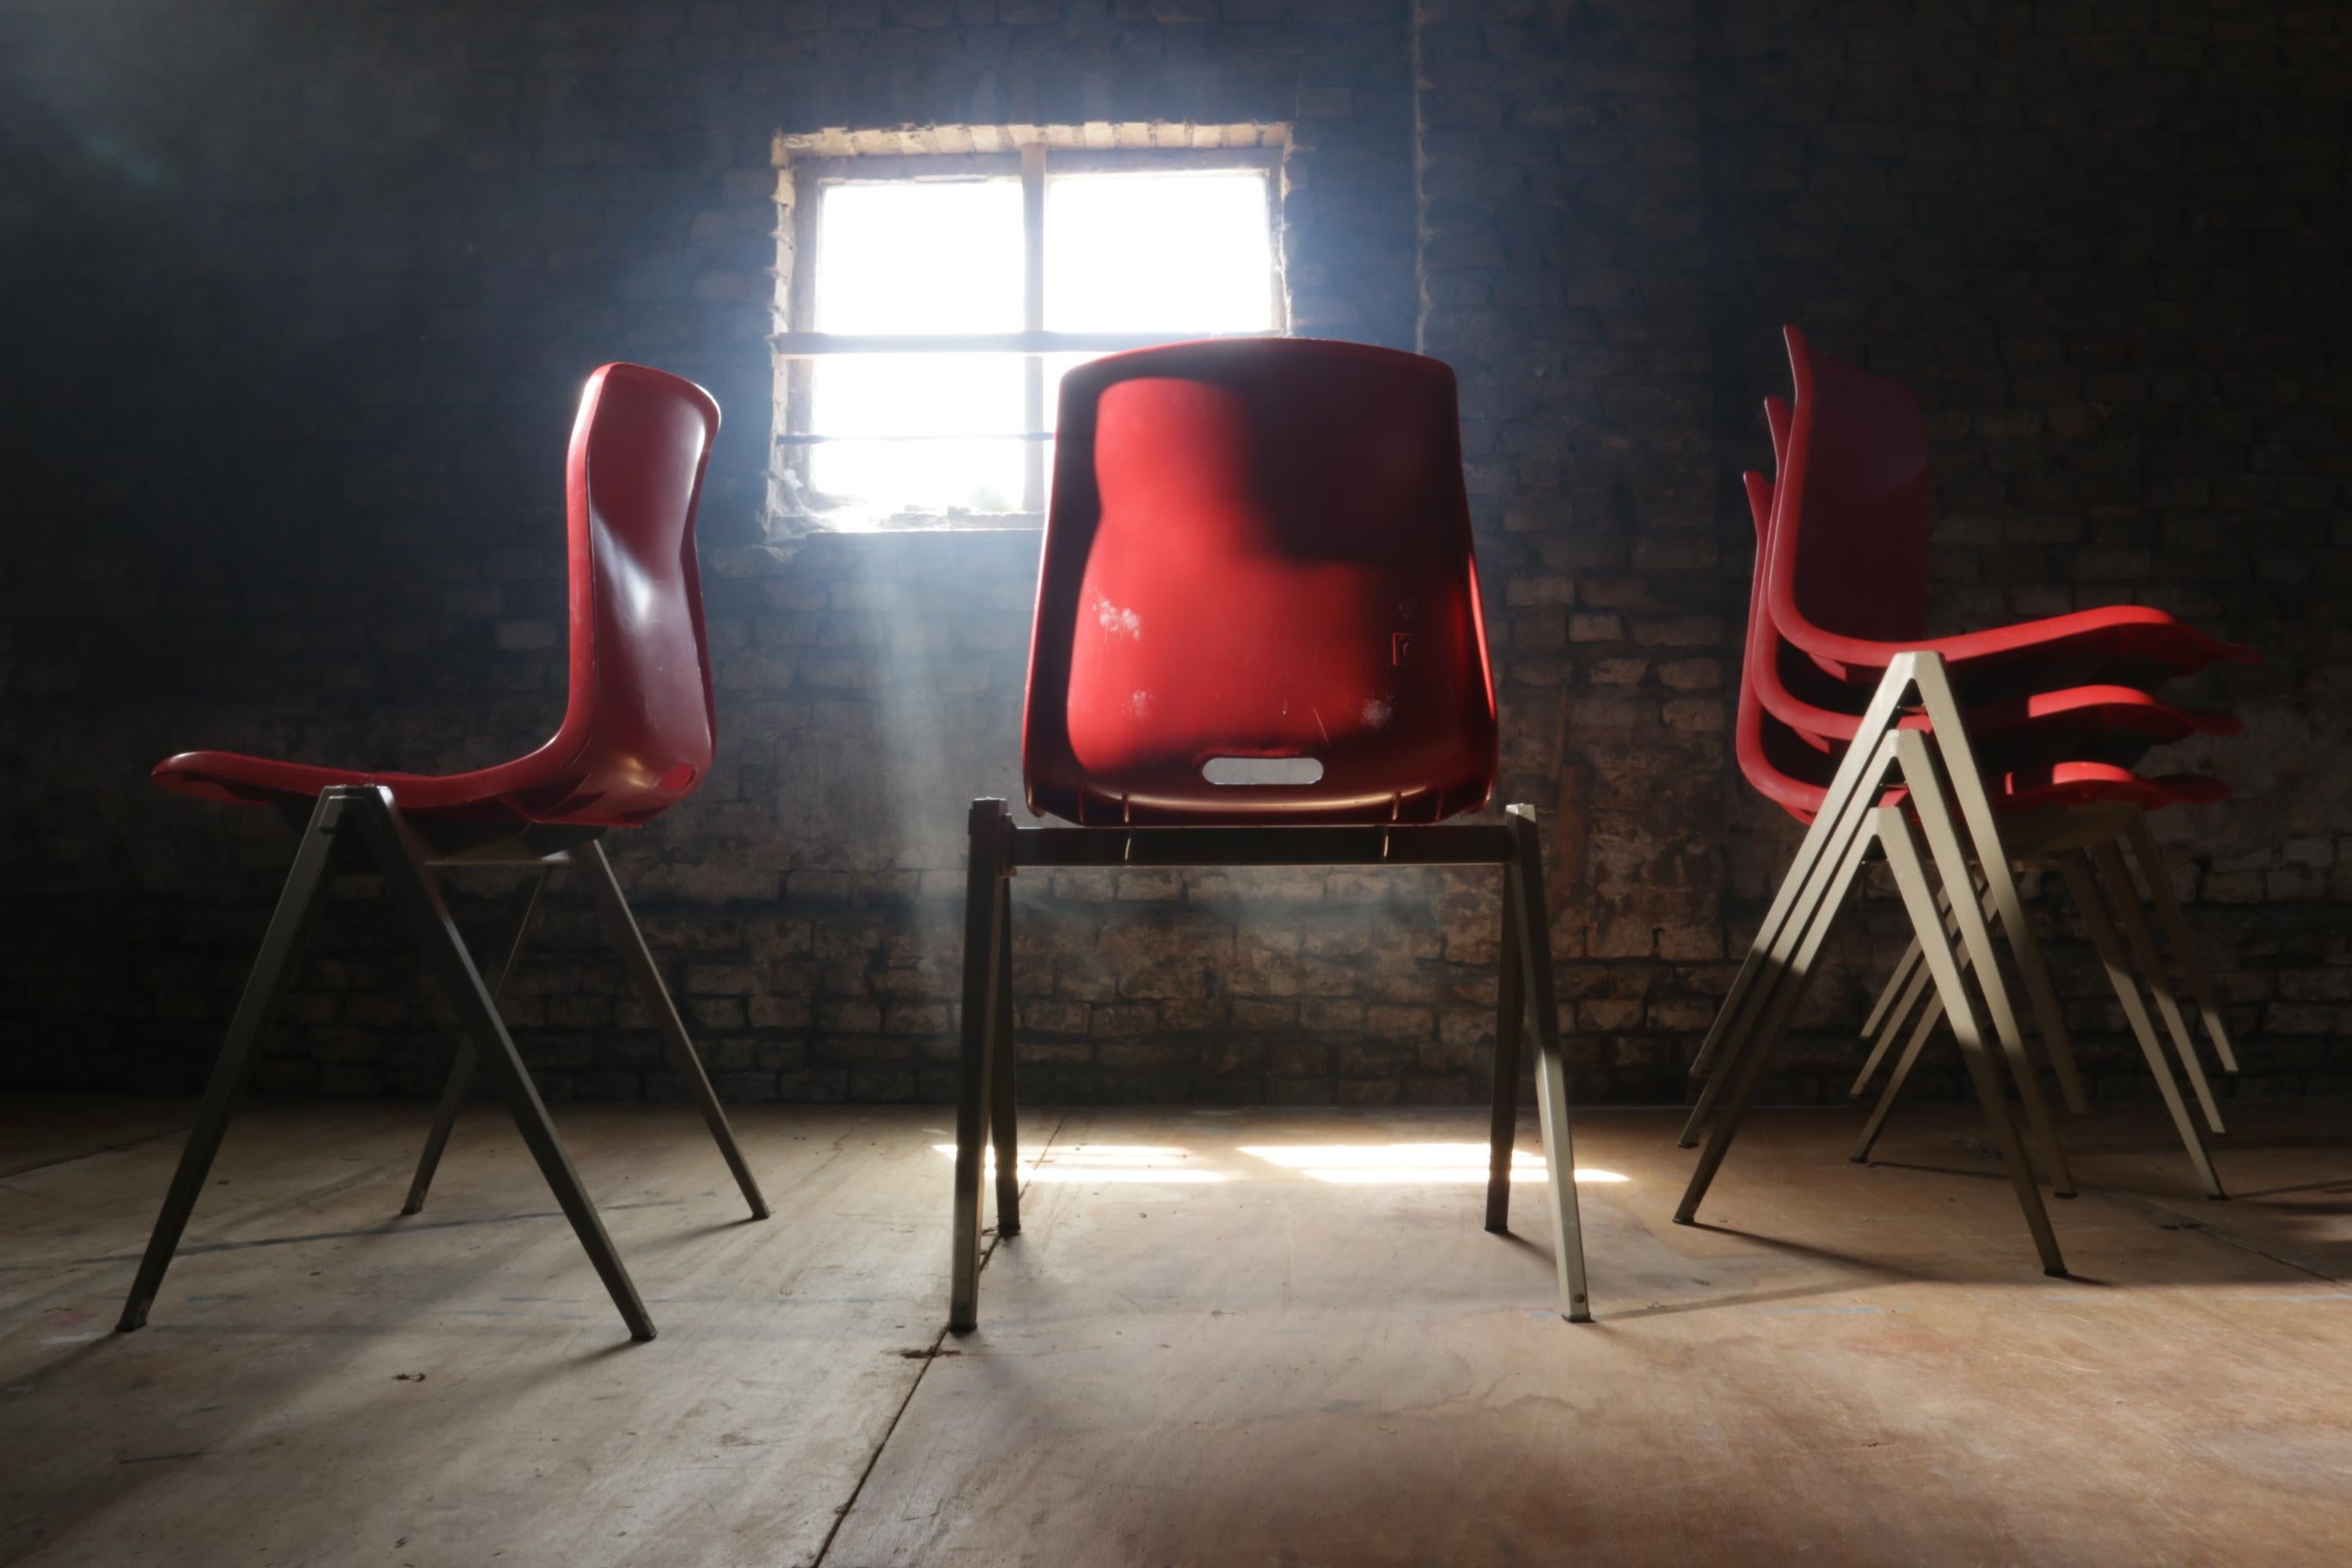 Chaises d'école industrielles Galvanitas S22 Compass / Pyramid des années 1960.
La chaise a une structure en métal revêtu gris clair, une assise en plastique moulé avec coque fermée de couleur rouge.
Ces pieds s'empilent très facilement les uns